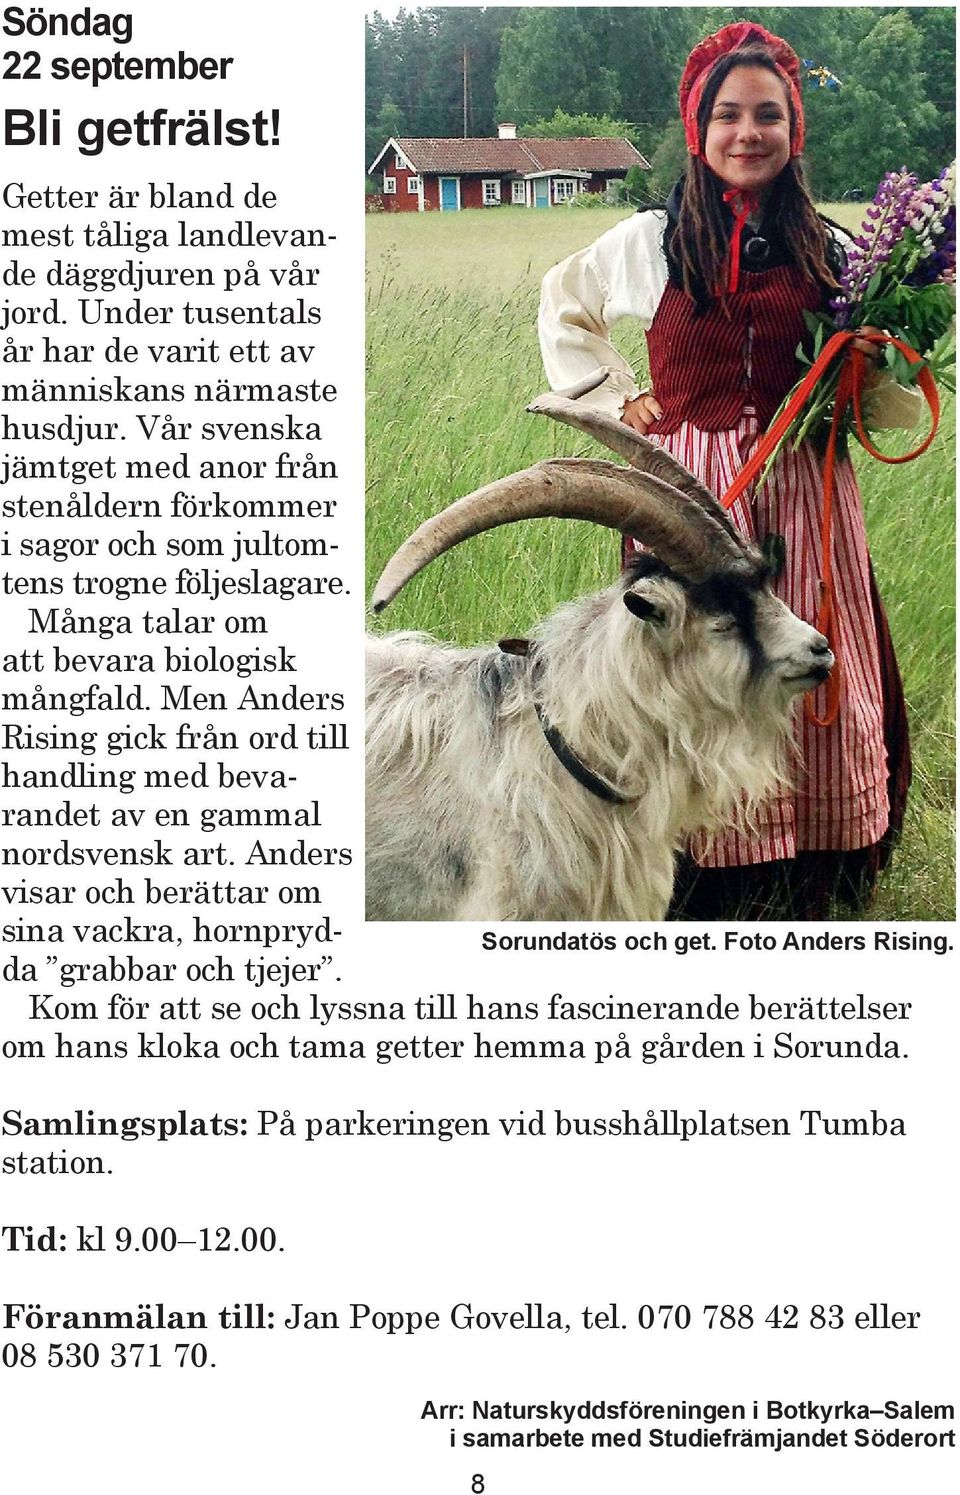 Men Anders Rising gick från ord till handling med bevarandet av en gammal nordsvensk art. Anders visar och berät tar om sina vackra, hornprydda grabbar och tjejer.